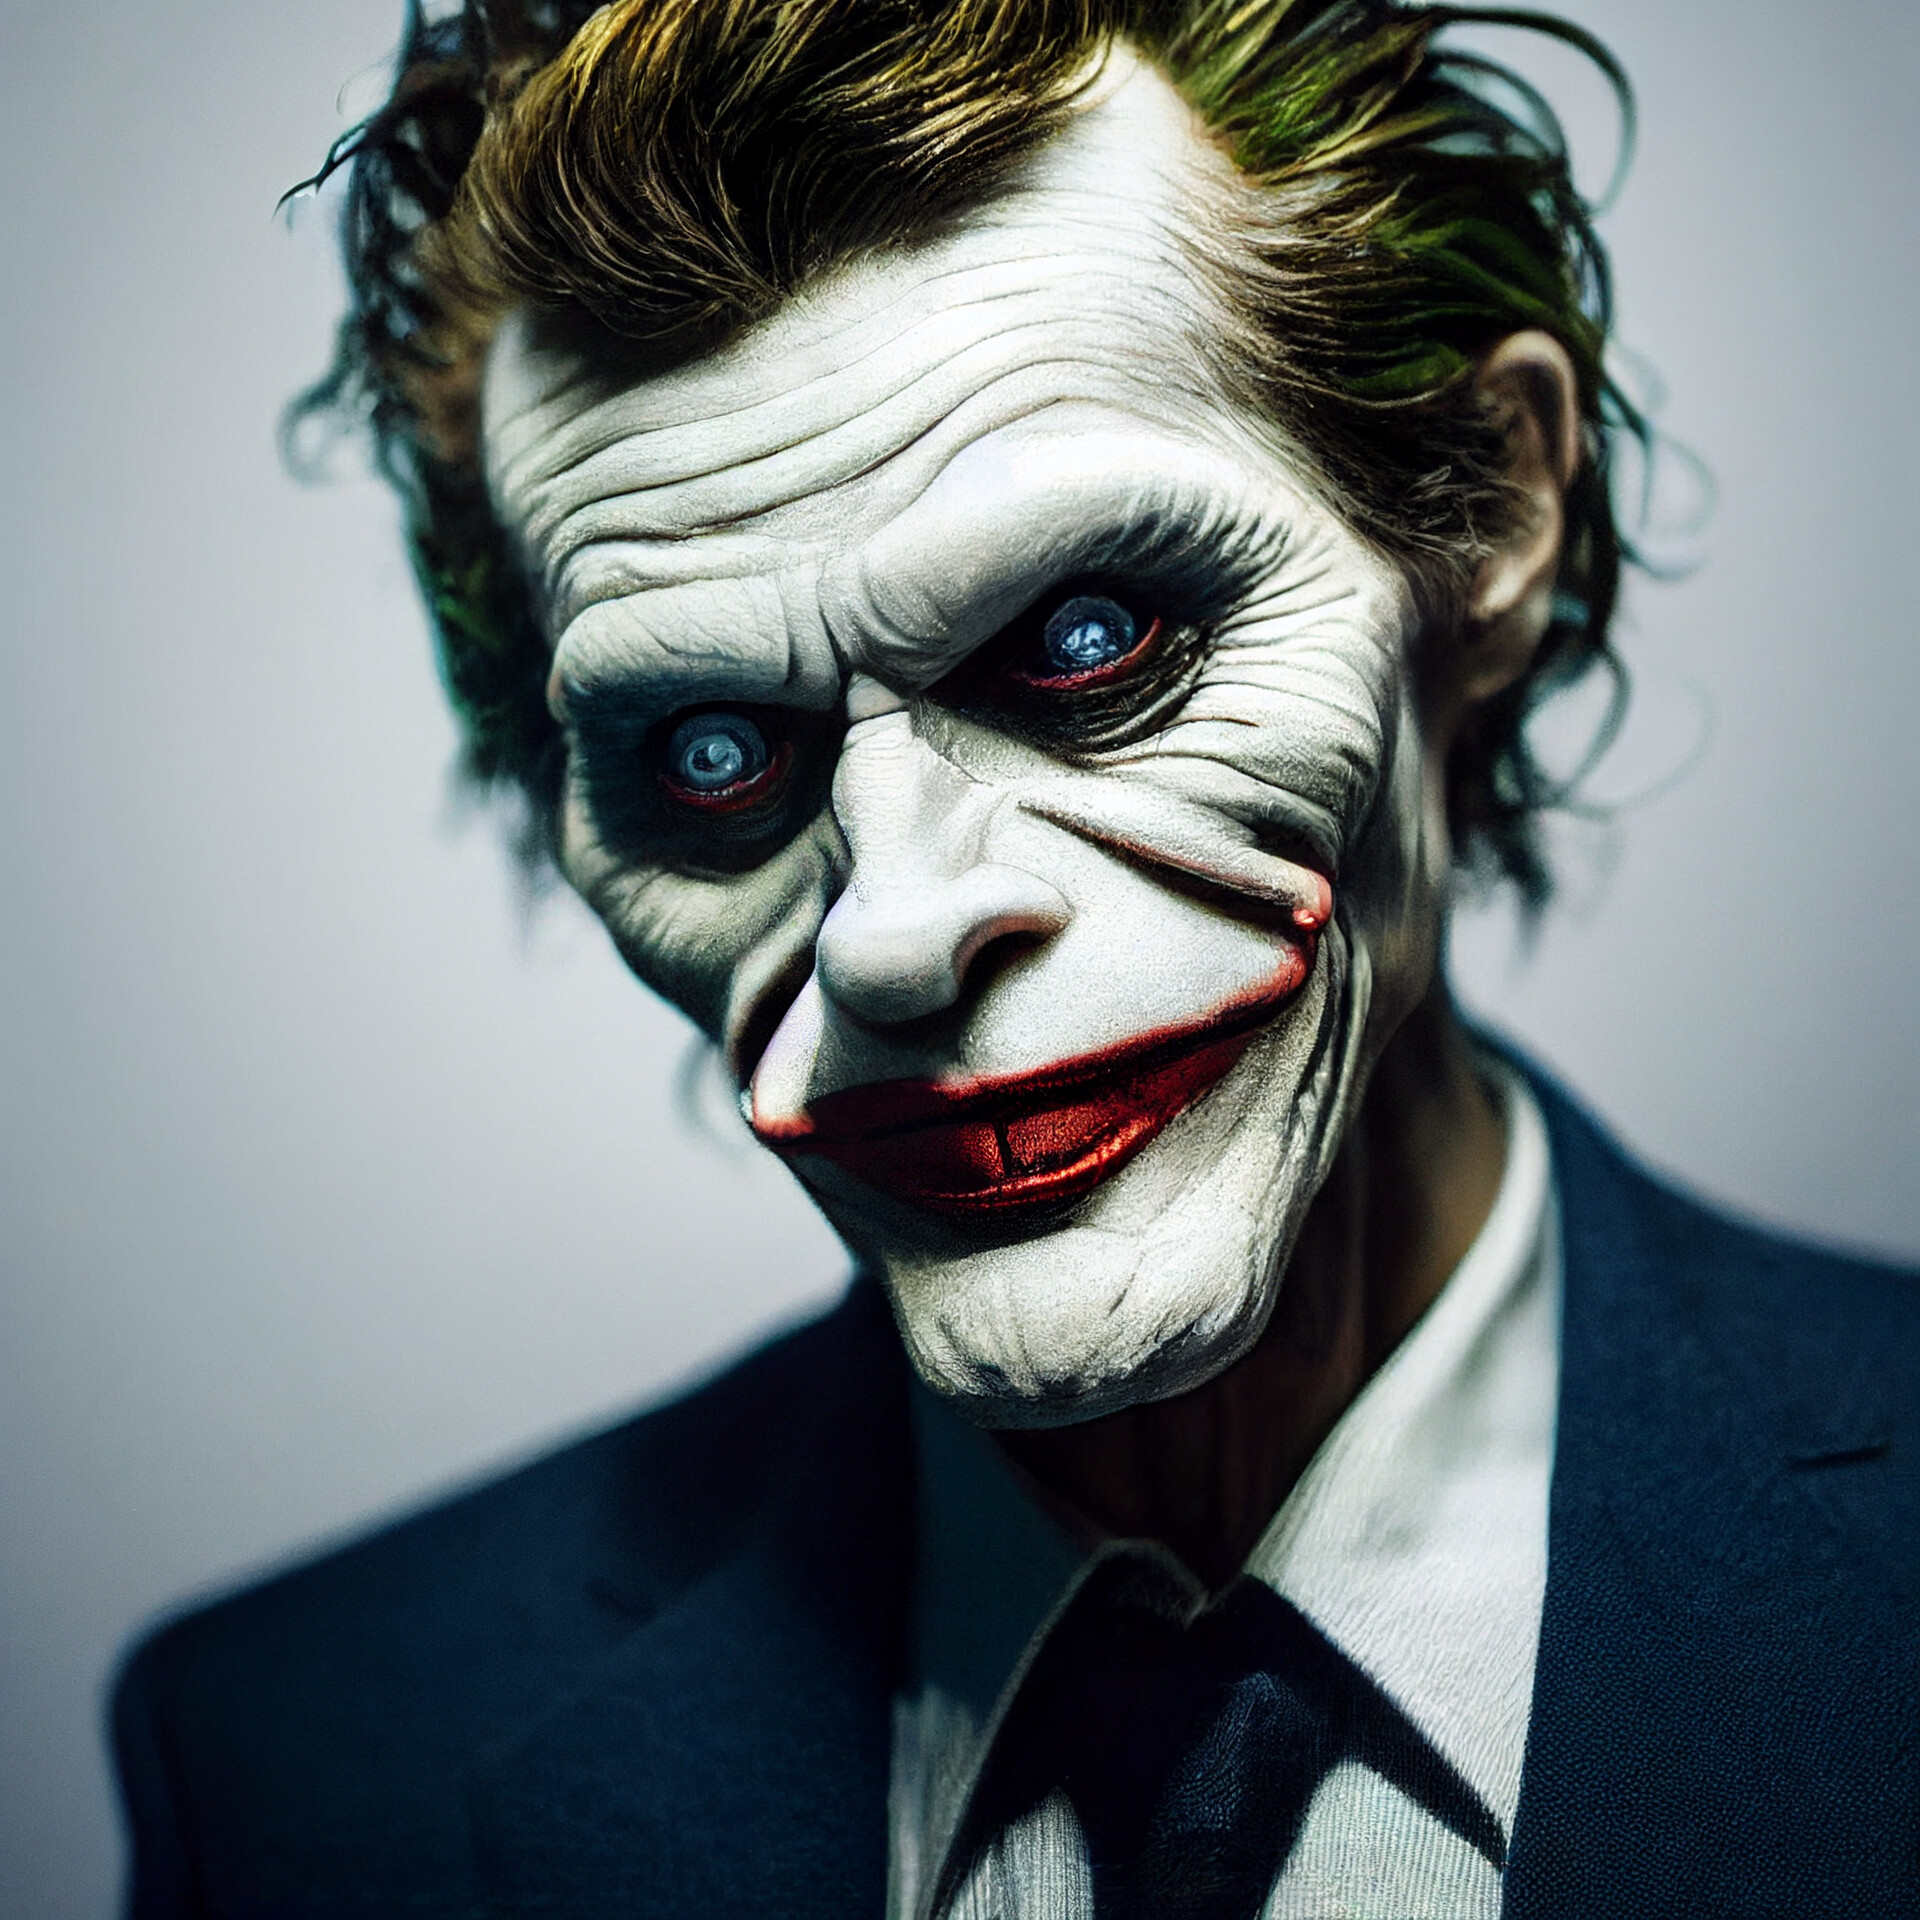 ArtStation - Willem Dafoe as Joker